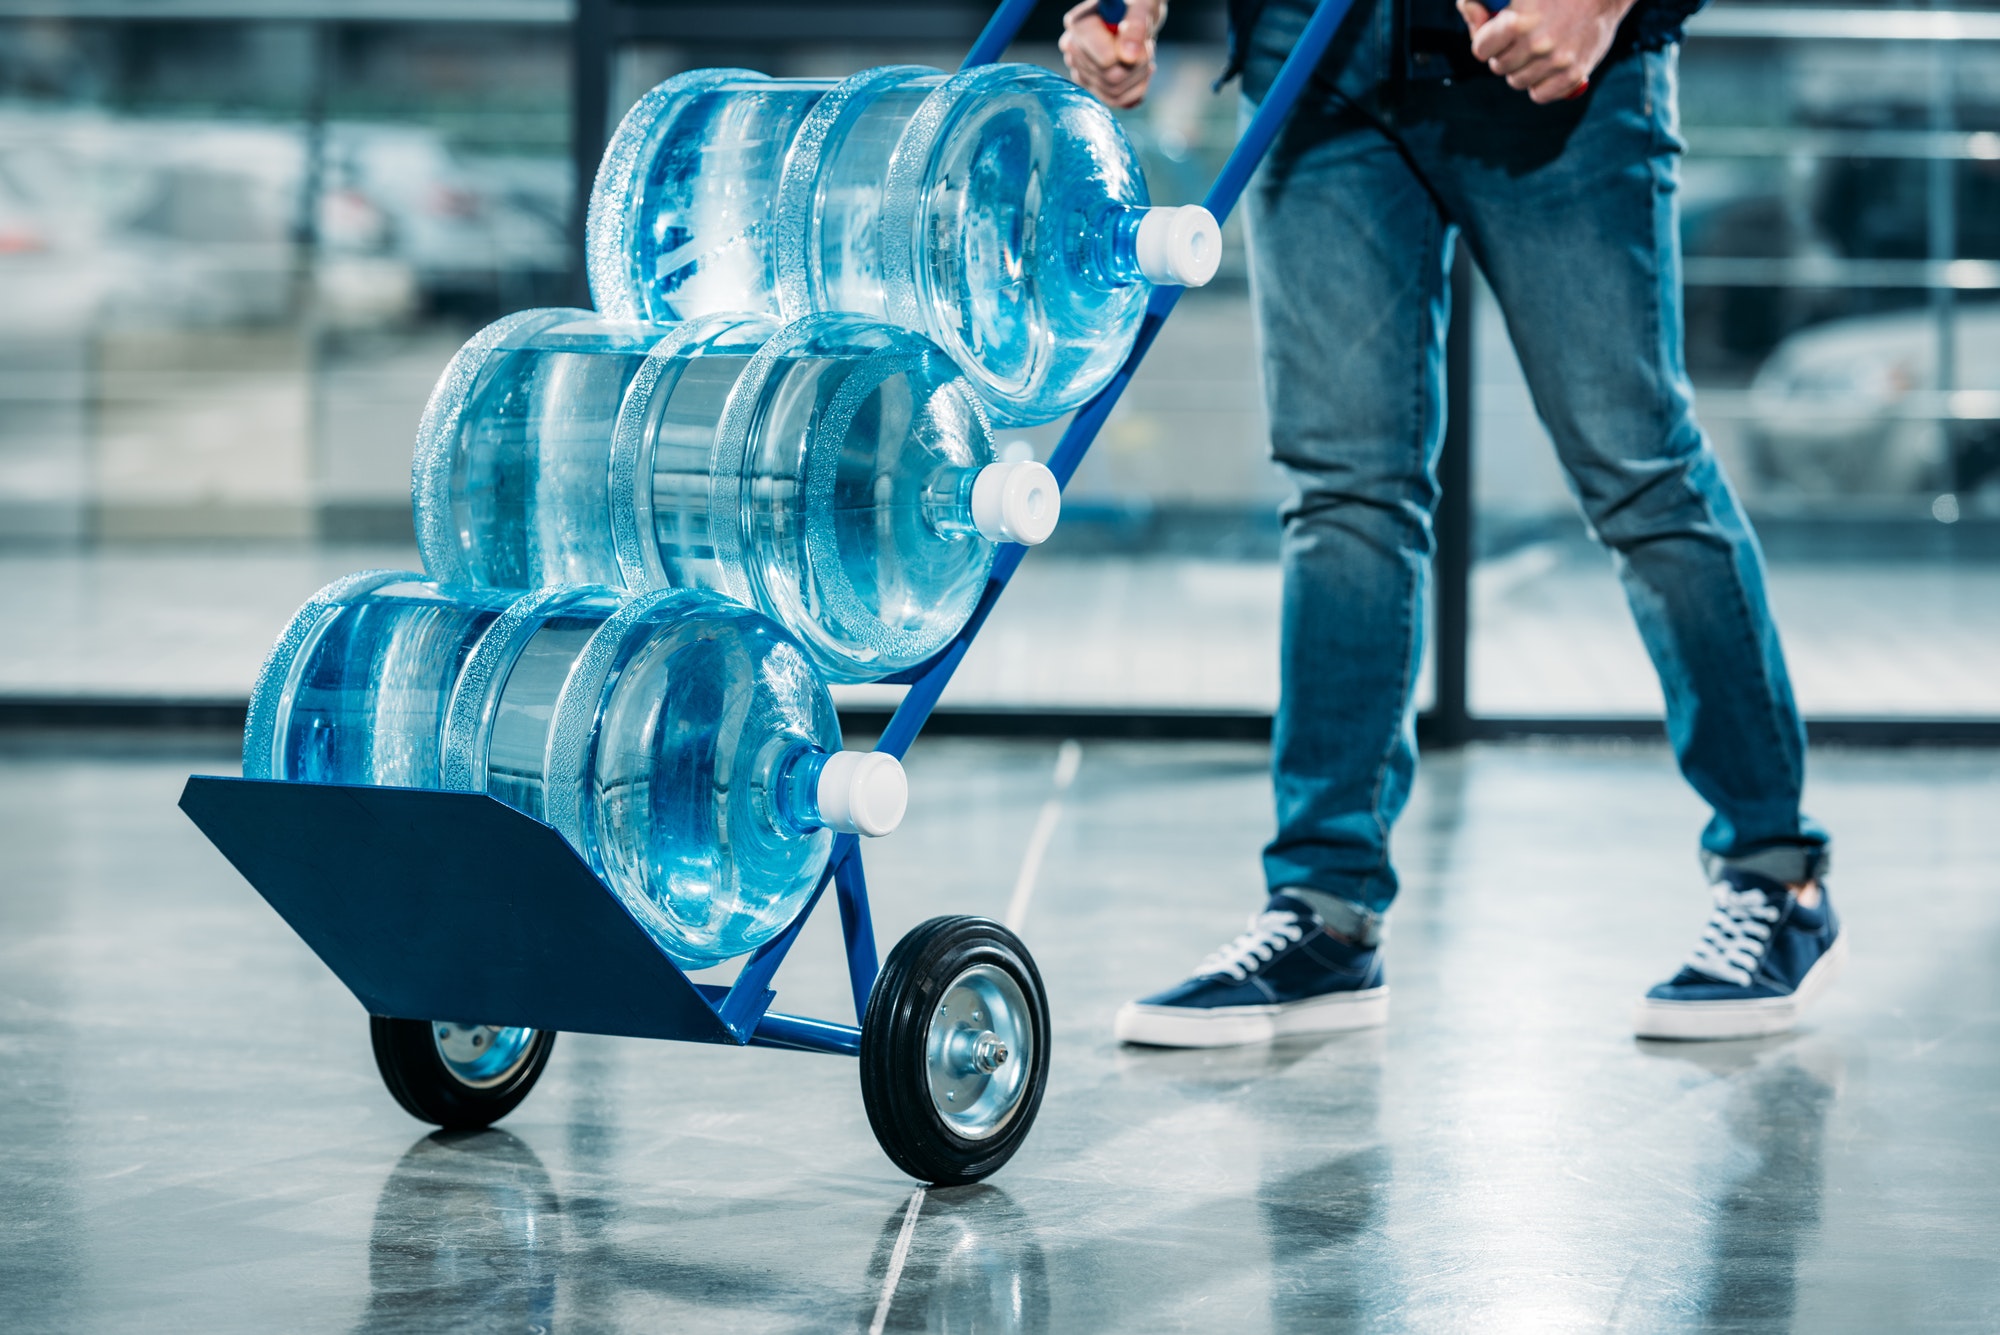 Loader pushing cart with water bottles